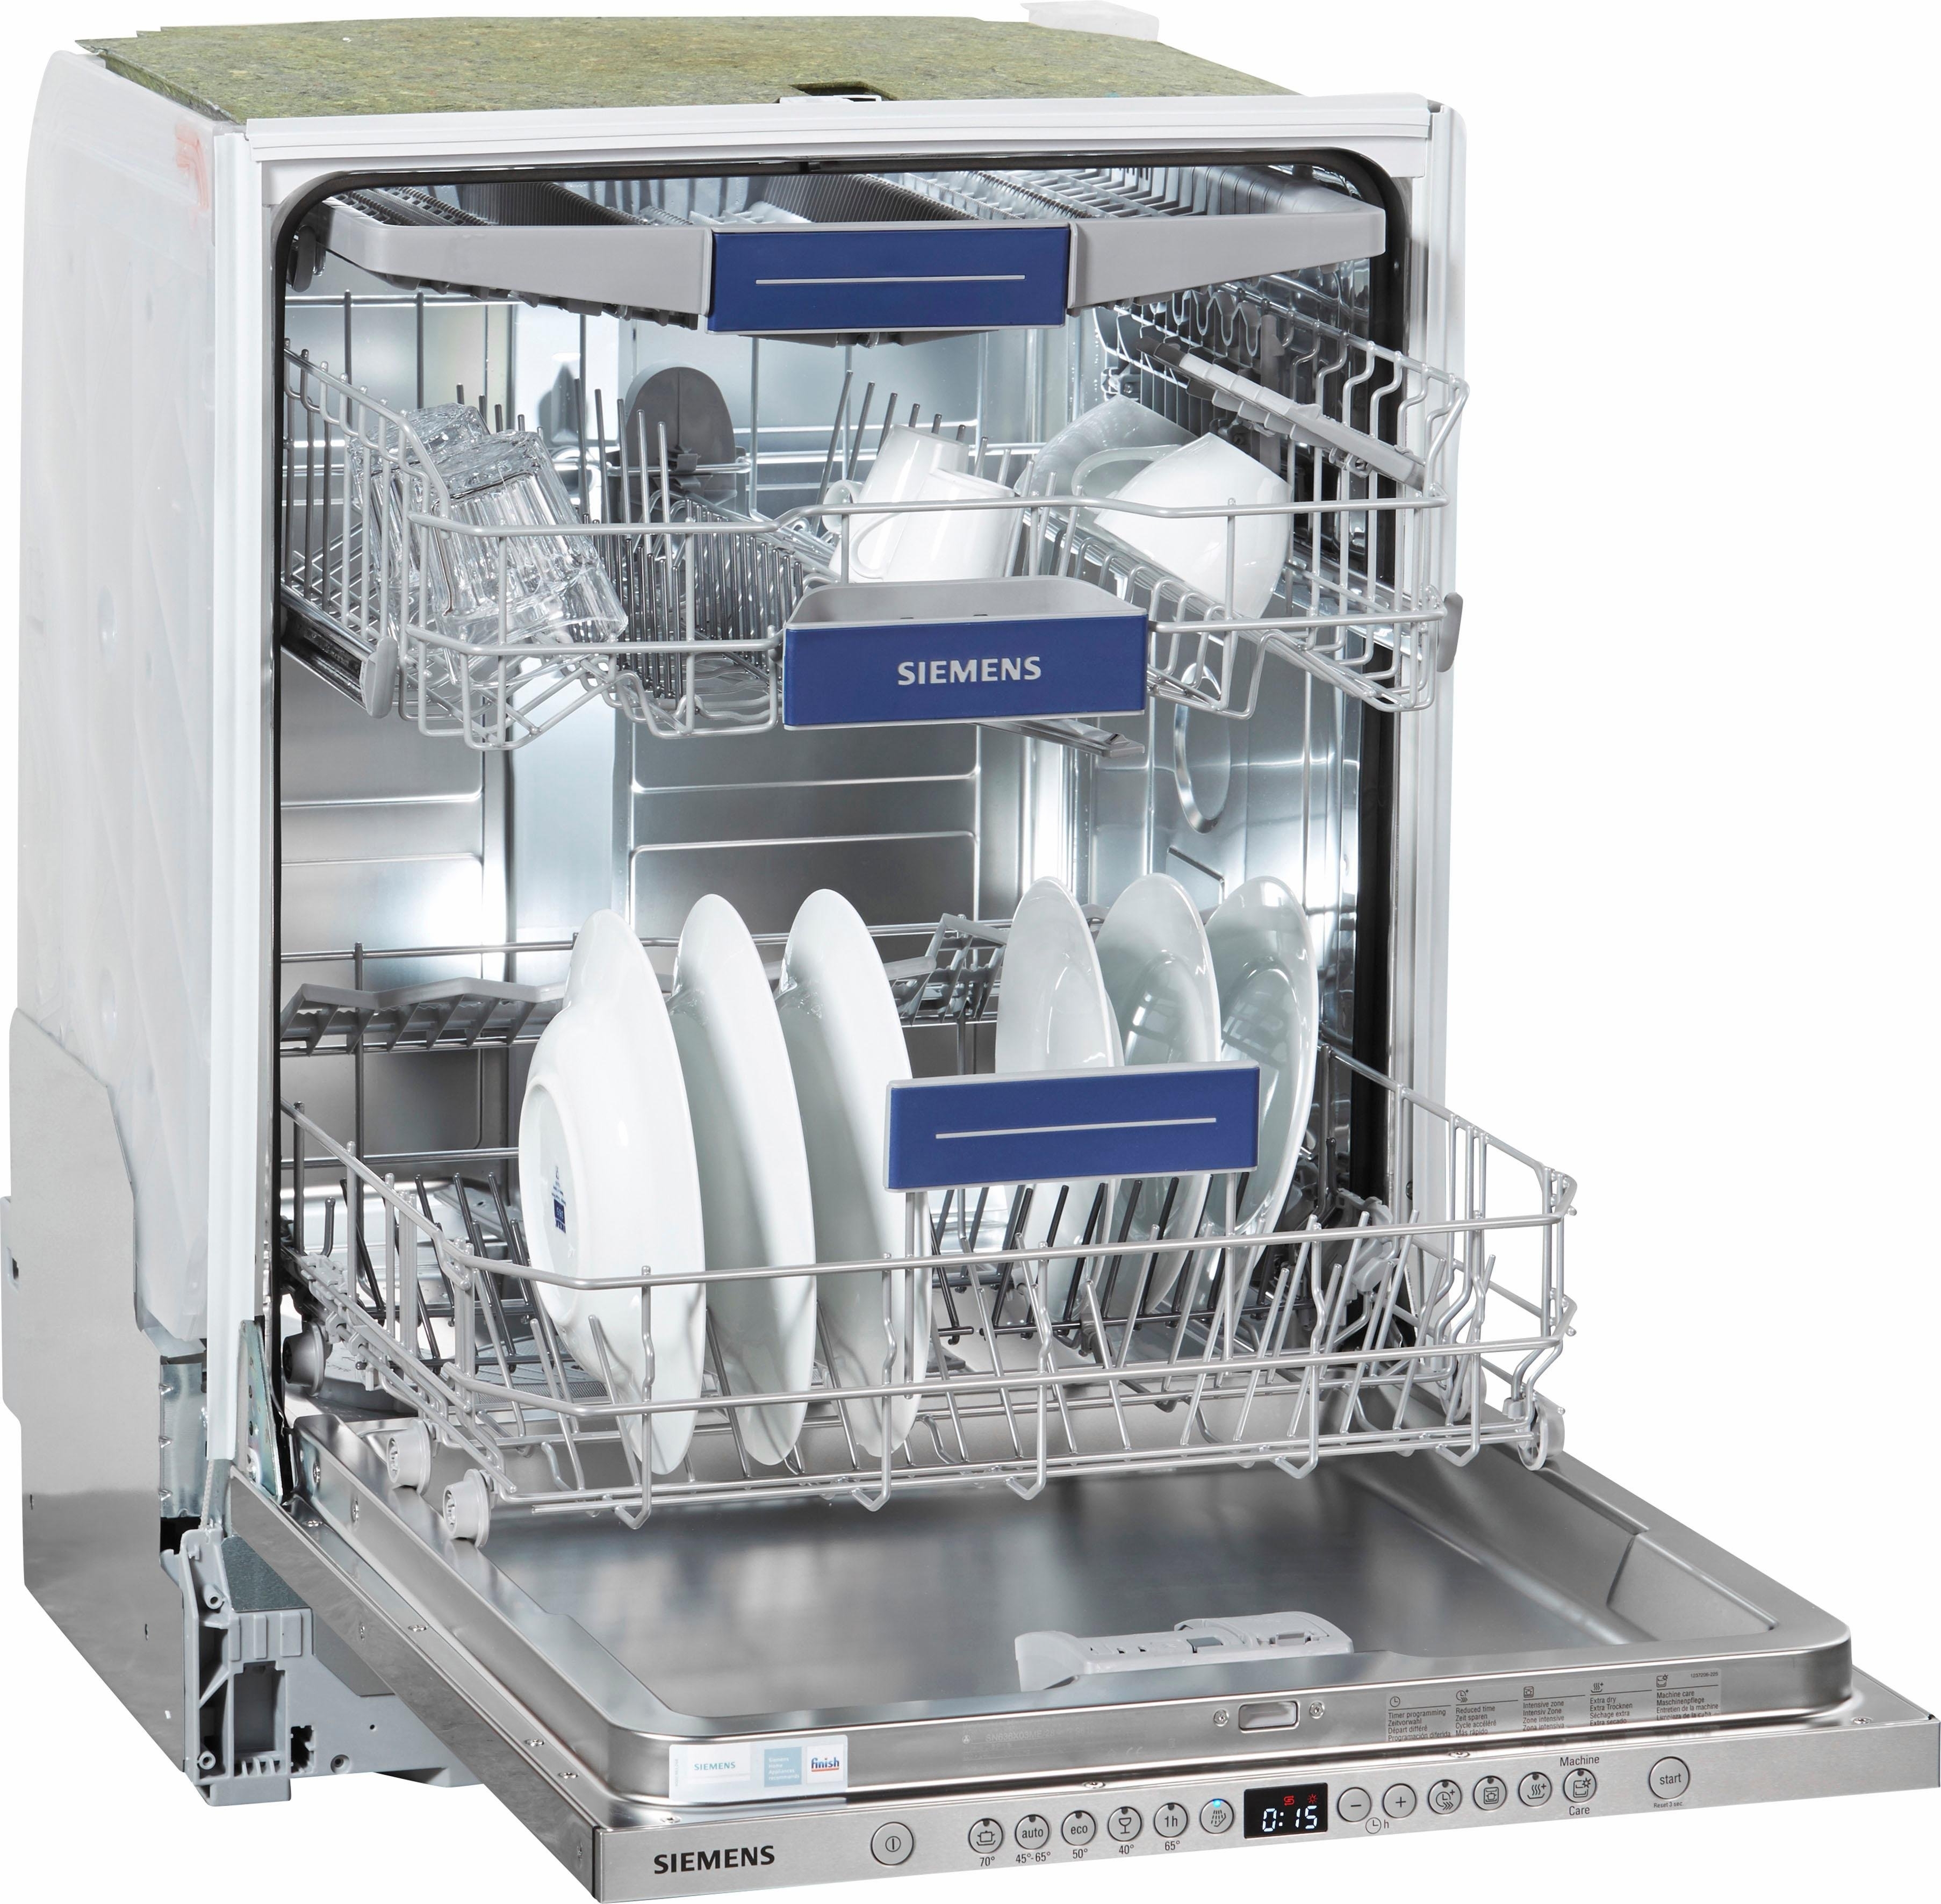 Посудомоечная машина электронная. Посудомоечная машина Siemens SR 635x01 me. Siemens посудомоечная машина 45 см отдельностоящая. Посудомойка Сименс 45 см встраиваемая. Посудомоечная машина Siemens 45 встраиваемая.